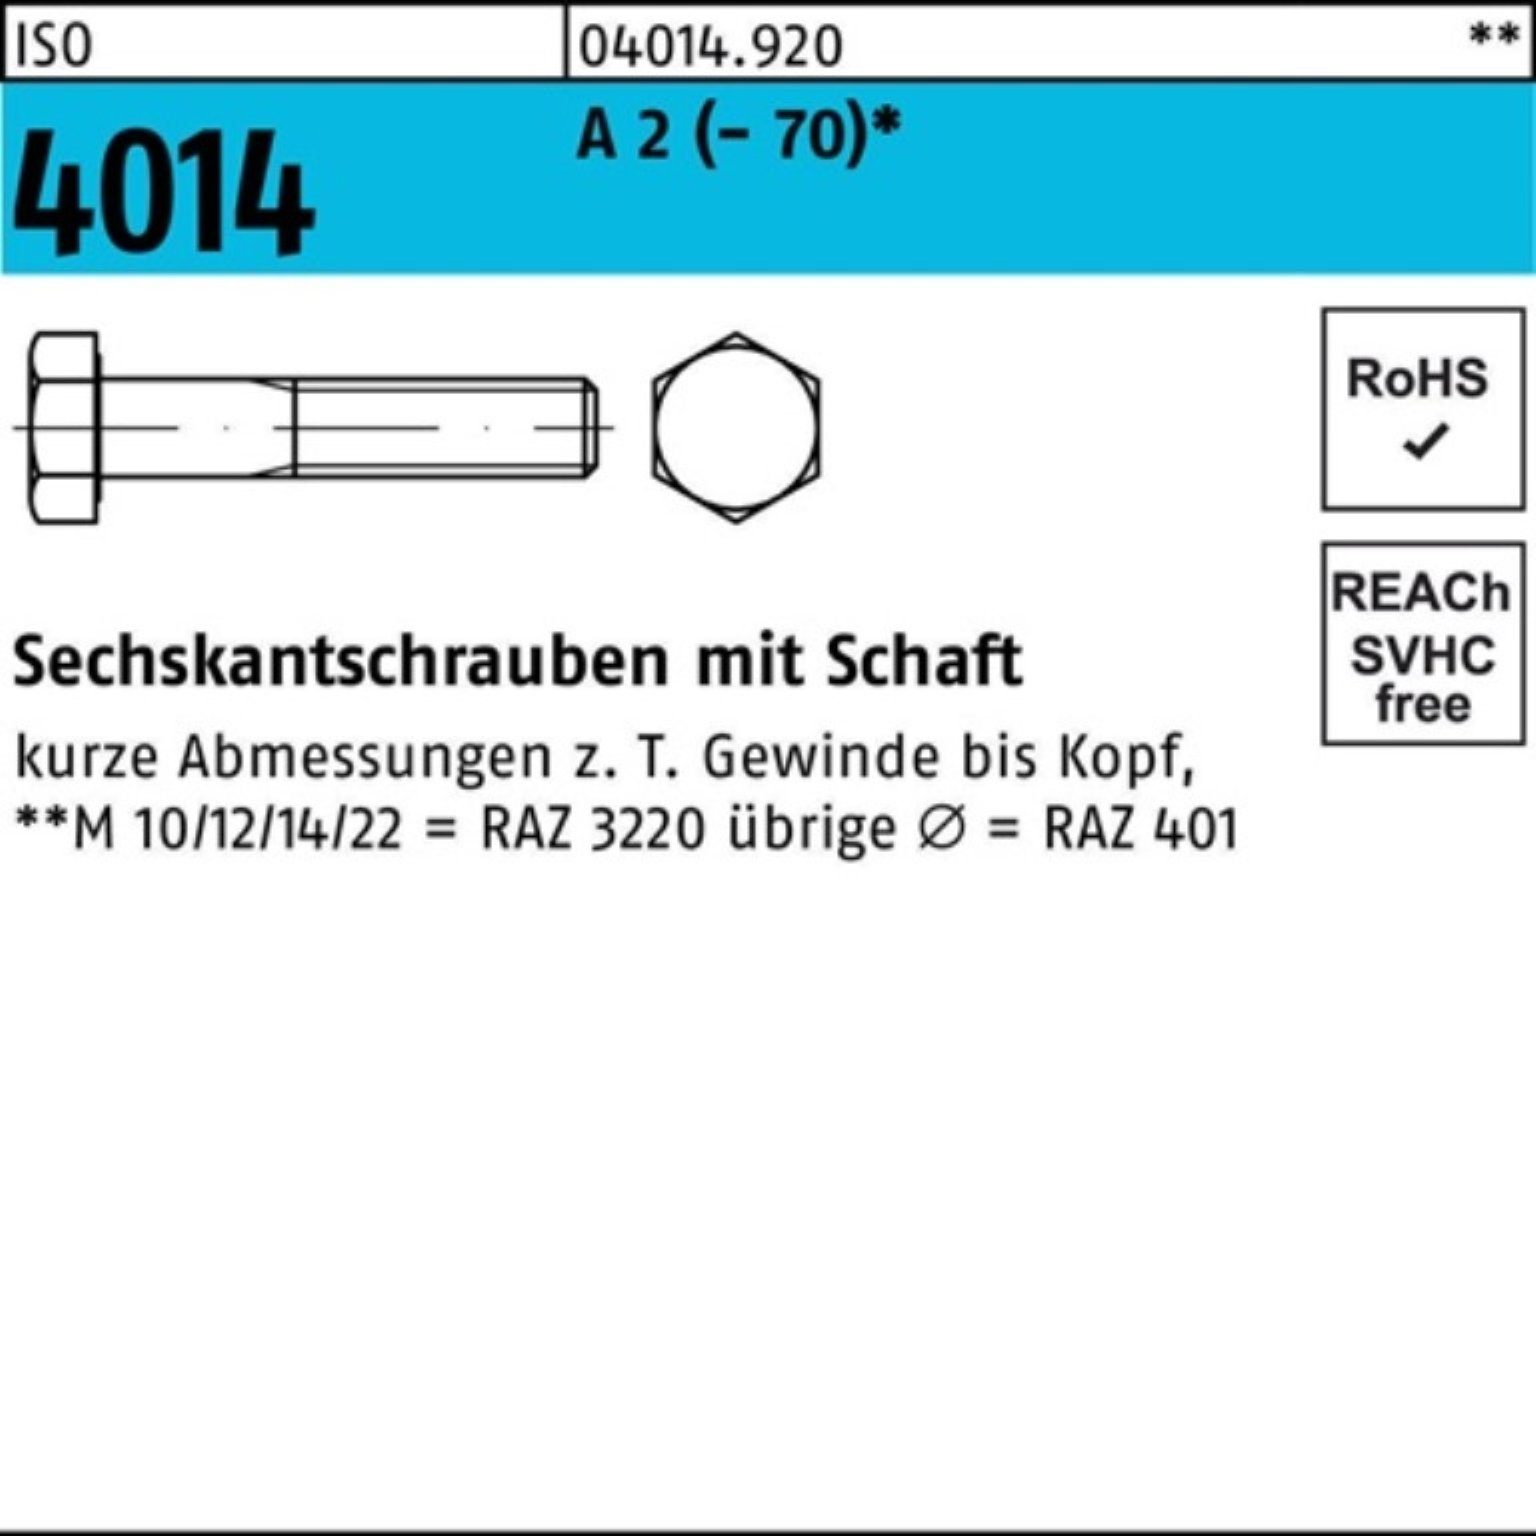 Bufab Sechskantschraube 100er Pack Sechskantschraube 4014 100 A St Schaft 100 M8x 2 (70) ISO